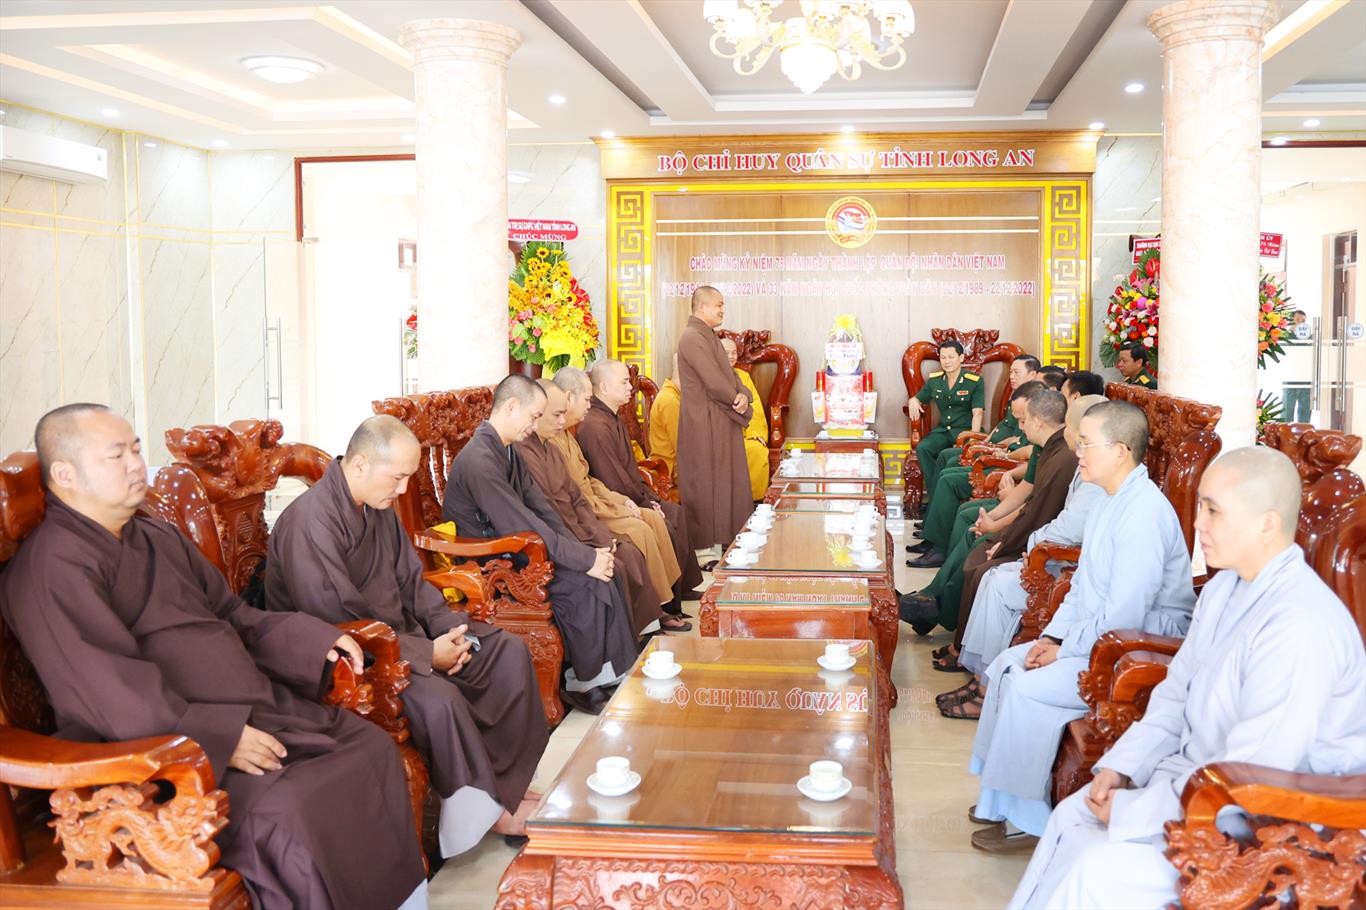 Giáo hội Phật giáo tỉnh Long An và các huyện chúc mừng ngày thành lập Quân đội Nhân dân Việt Nam